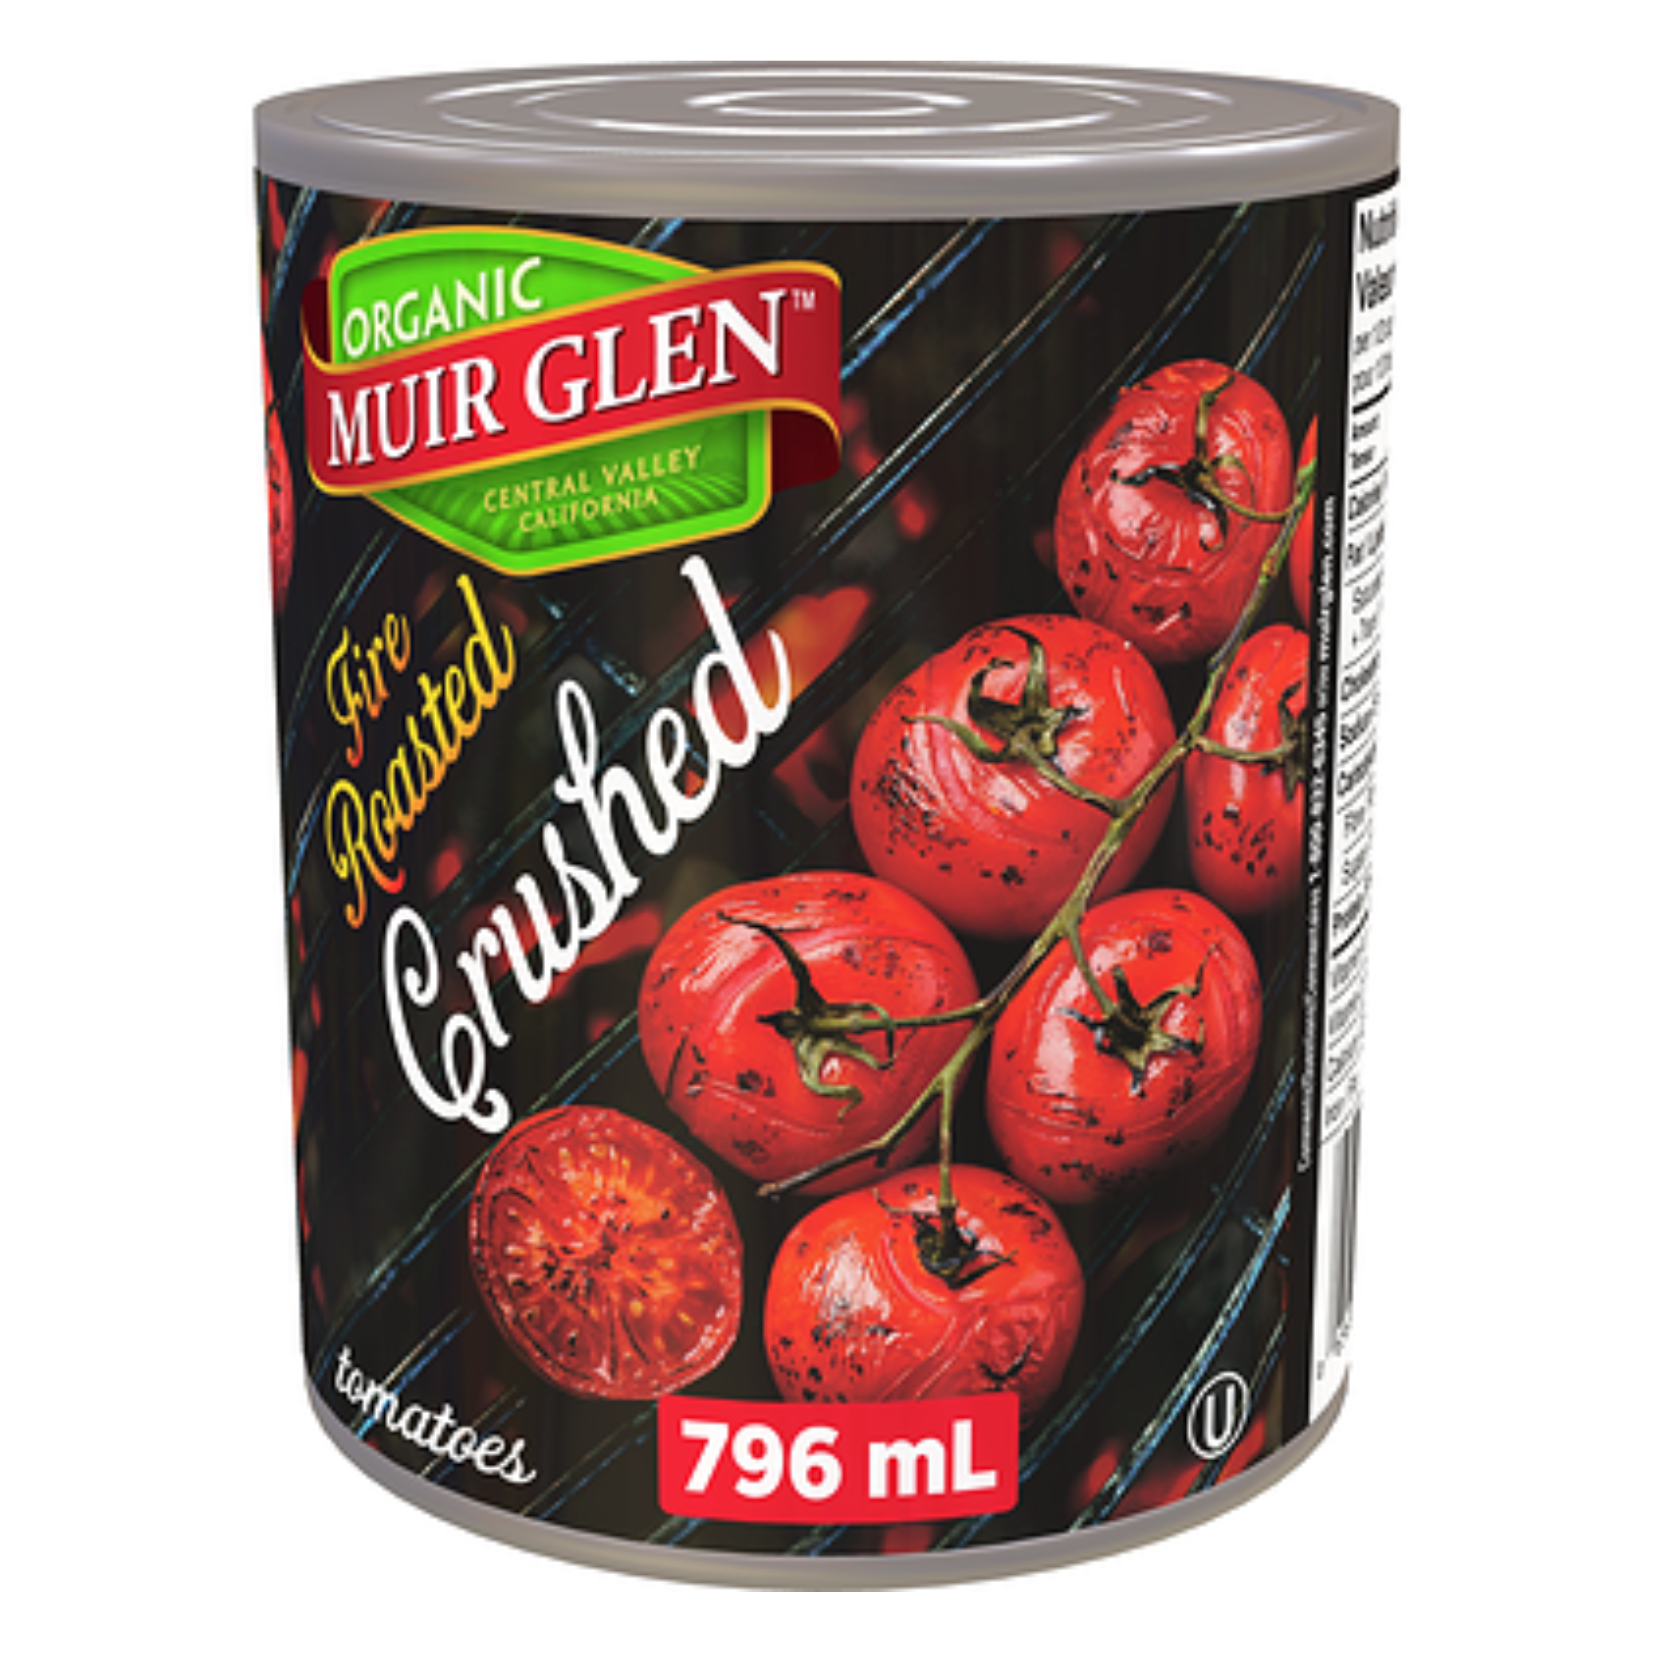 Muir Glen Fire Roasted Crushed Tomatoes 796ml